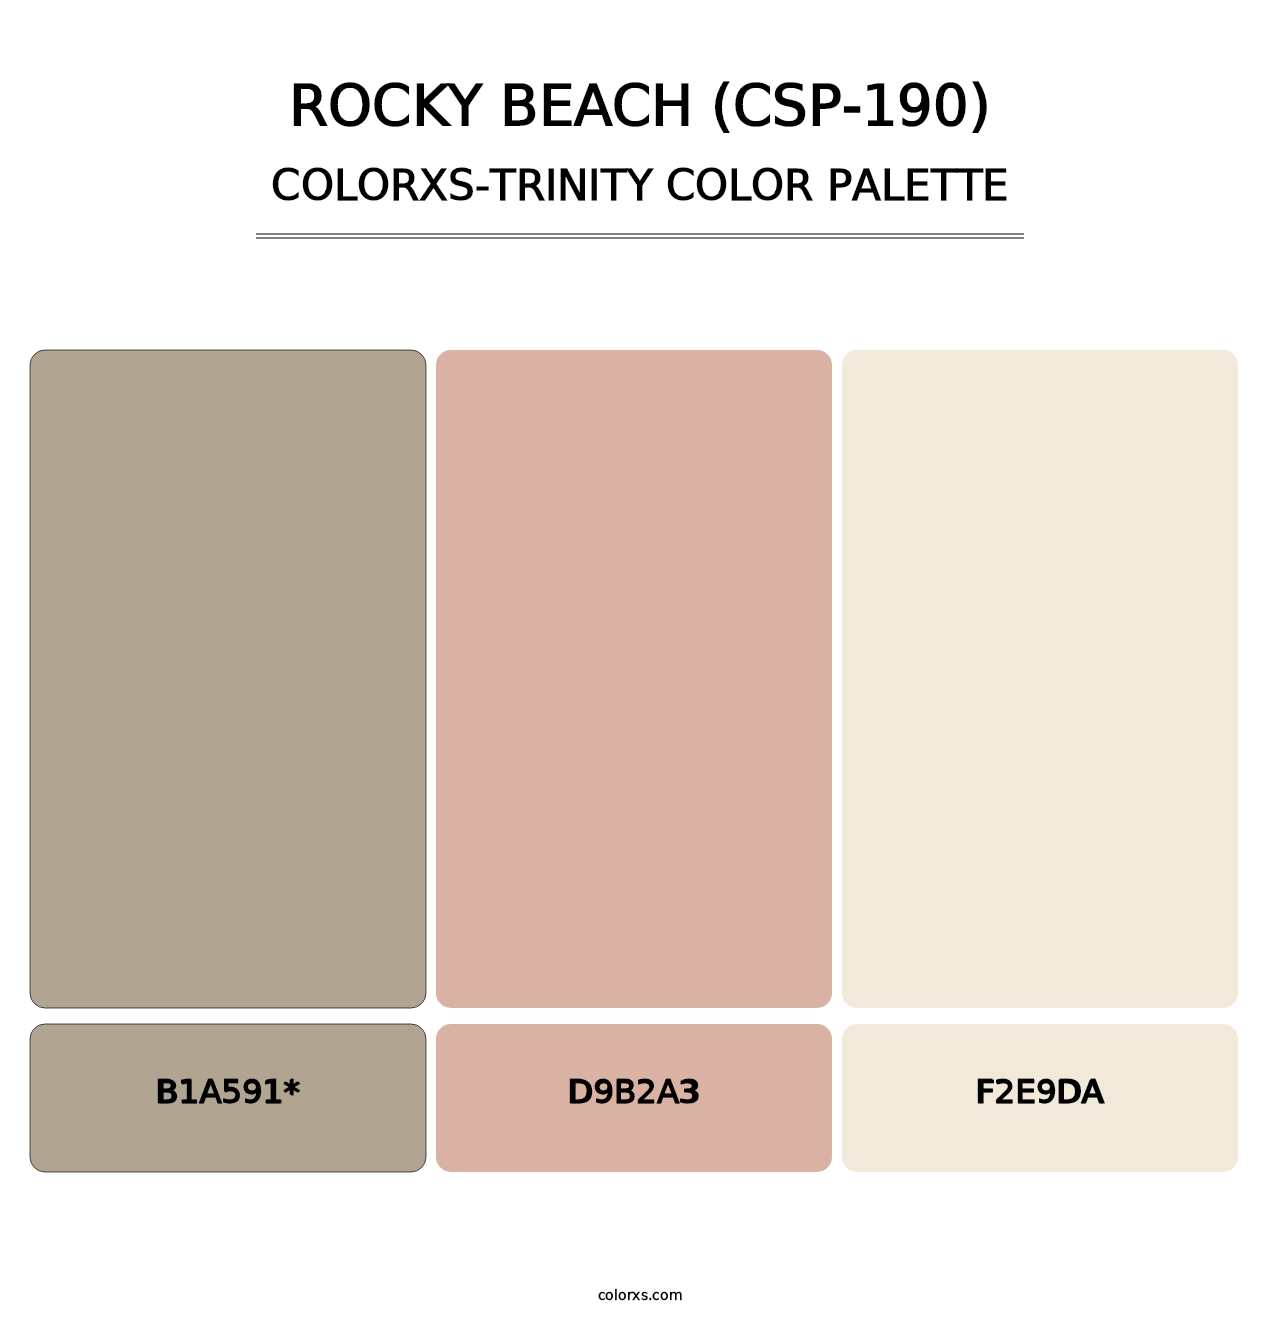 Rocky Beach (CSP-190) - Colorxs Trinity Palette